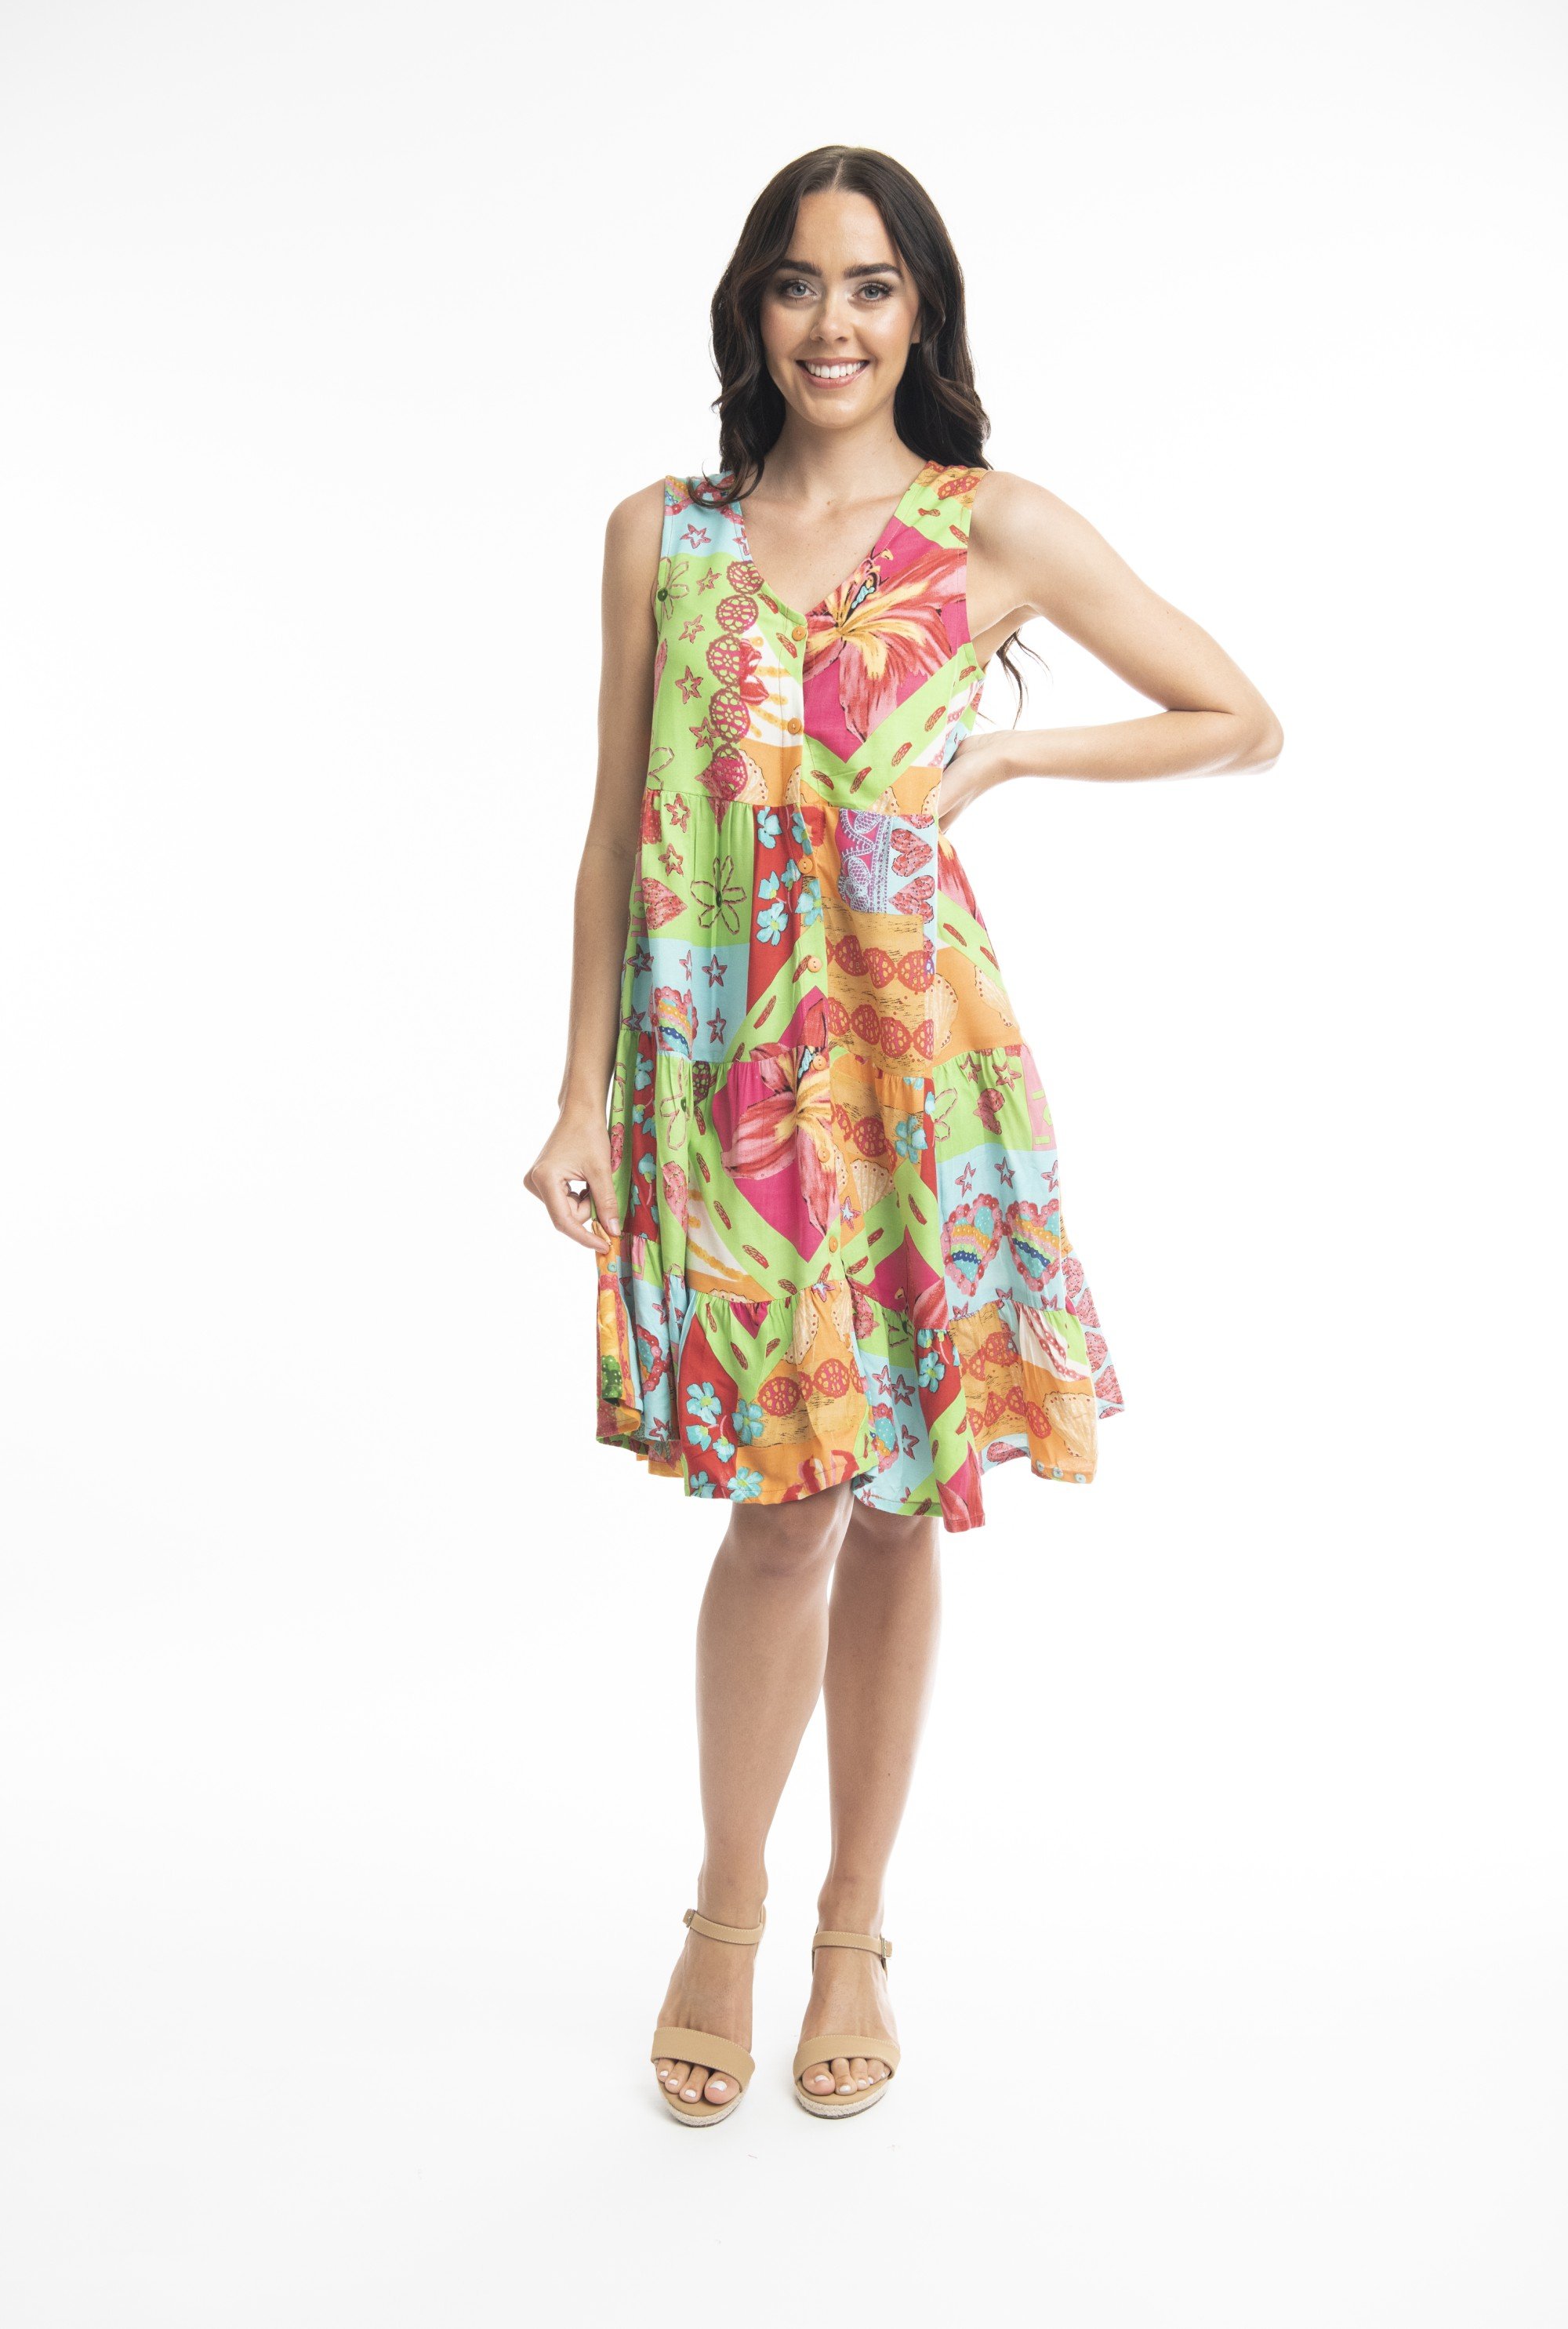 aiya-napa-dress-layers-sleeveless-780159_xl.jpeg